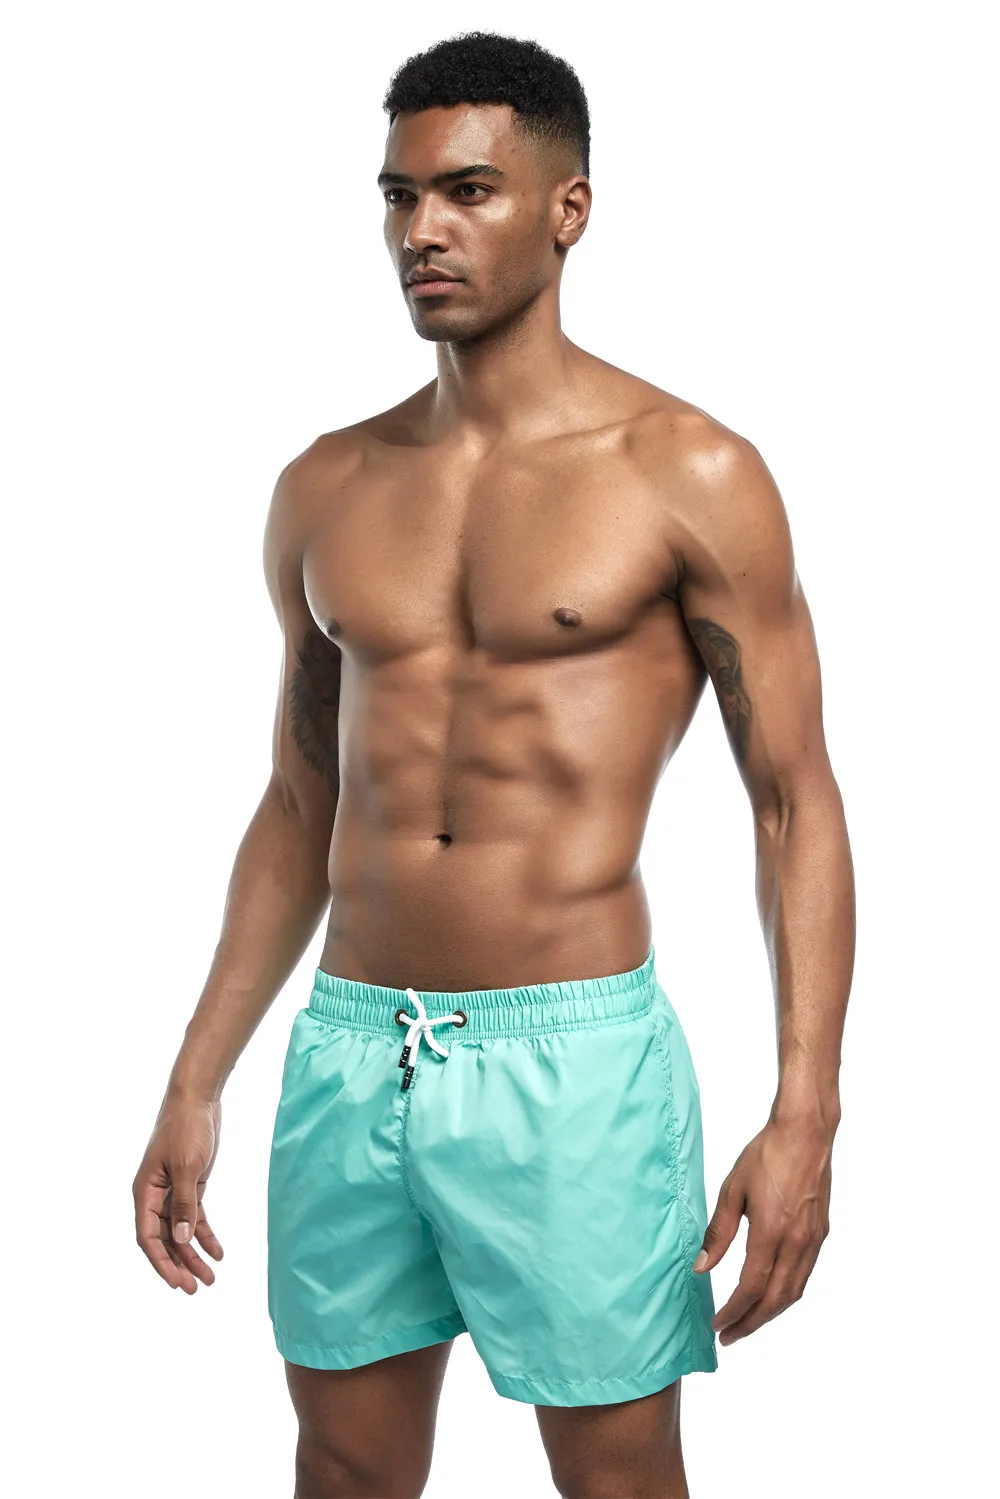 Мужская одежда для плавания JOCKMAIL, Шорты для плавания, пляжные шорты, шорты для плавания, Шорты для плавания, мужские спортивные шорты для бега